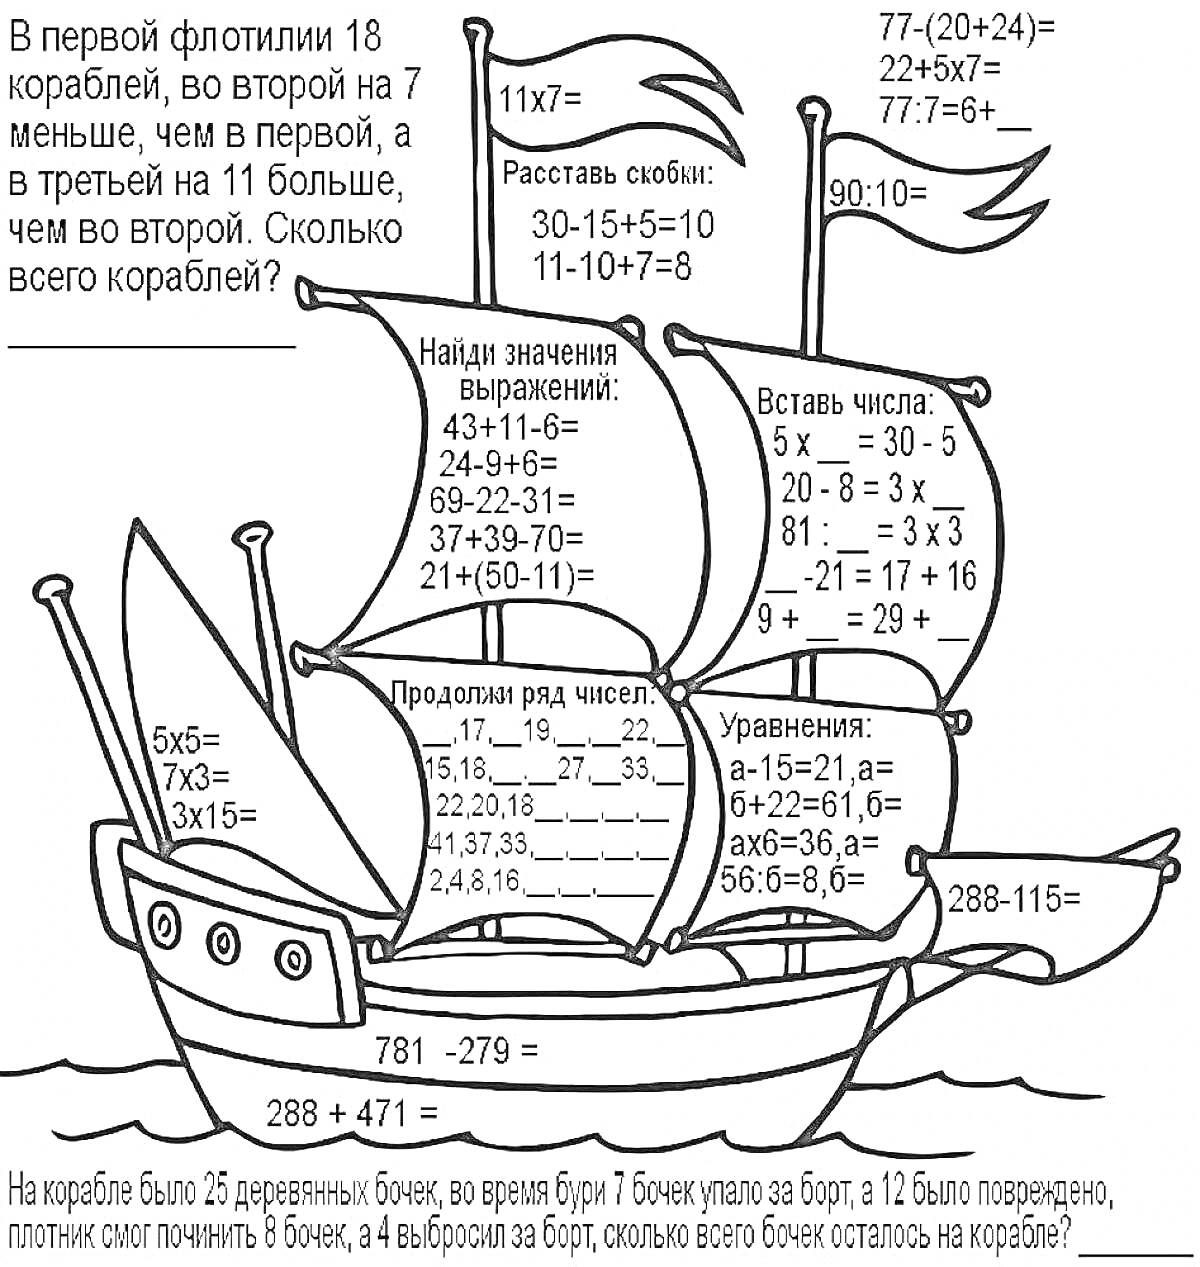 Раскраска Парусник с математическими задачами для 2 класса (реши примеры, расставь скобки, найди значение выражений, вставь числа)